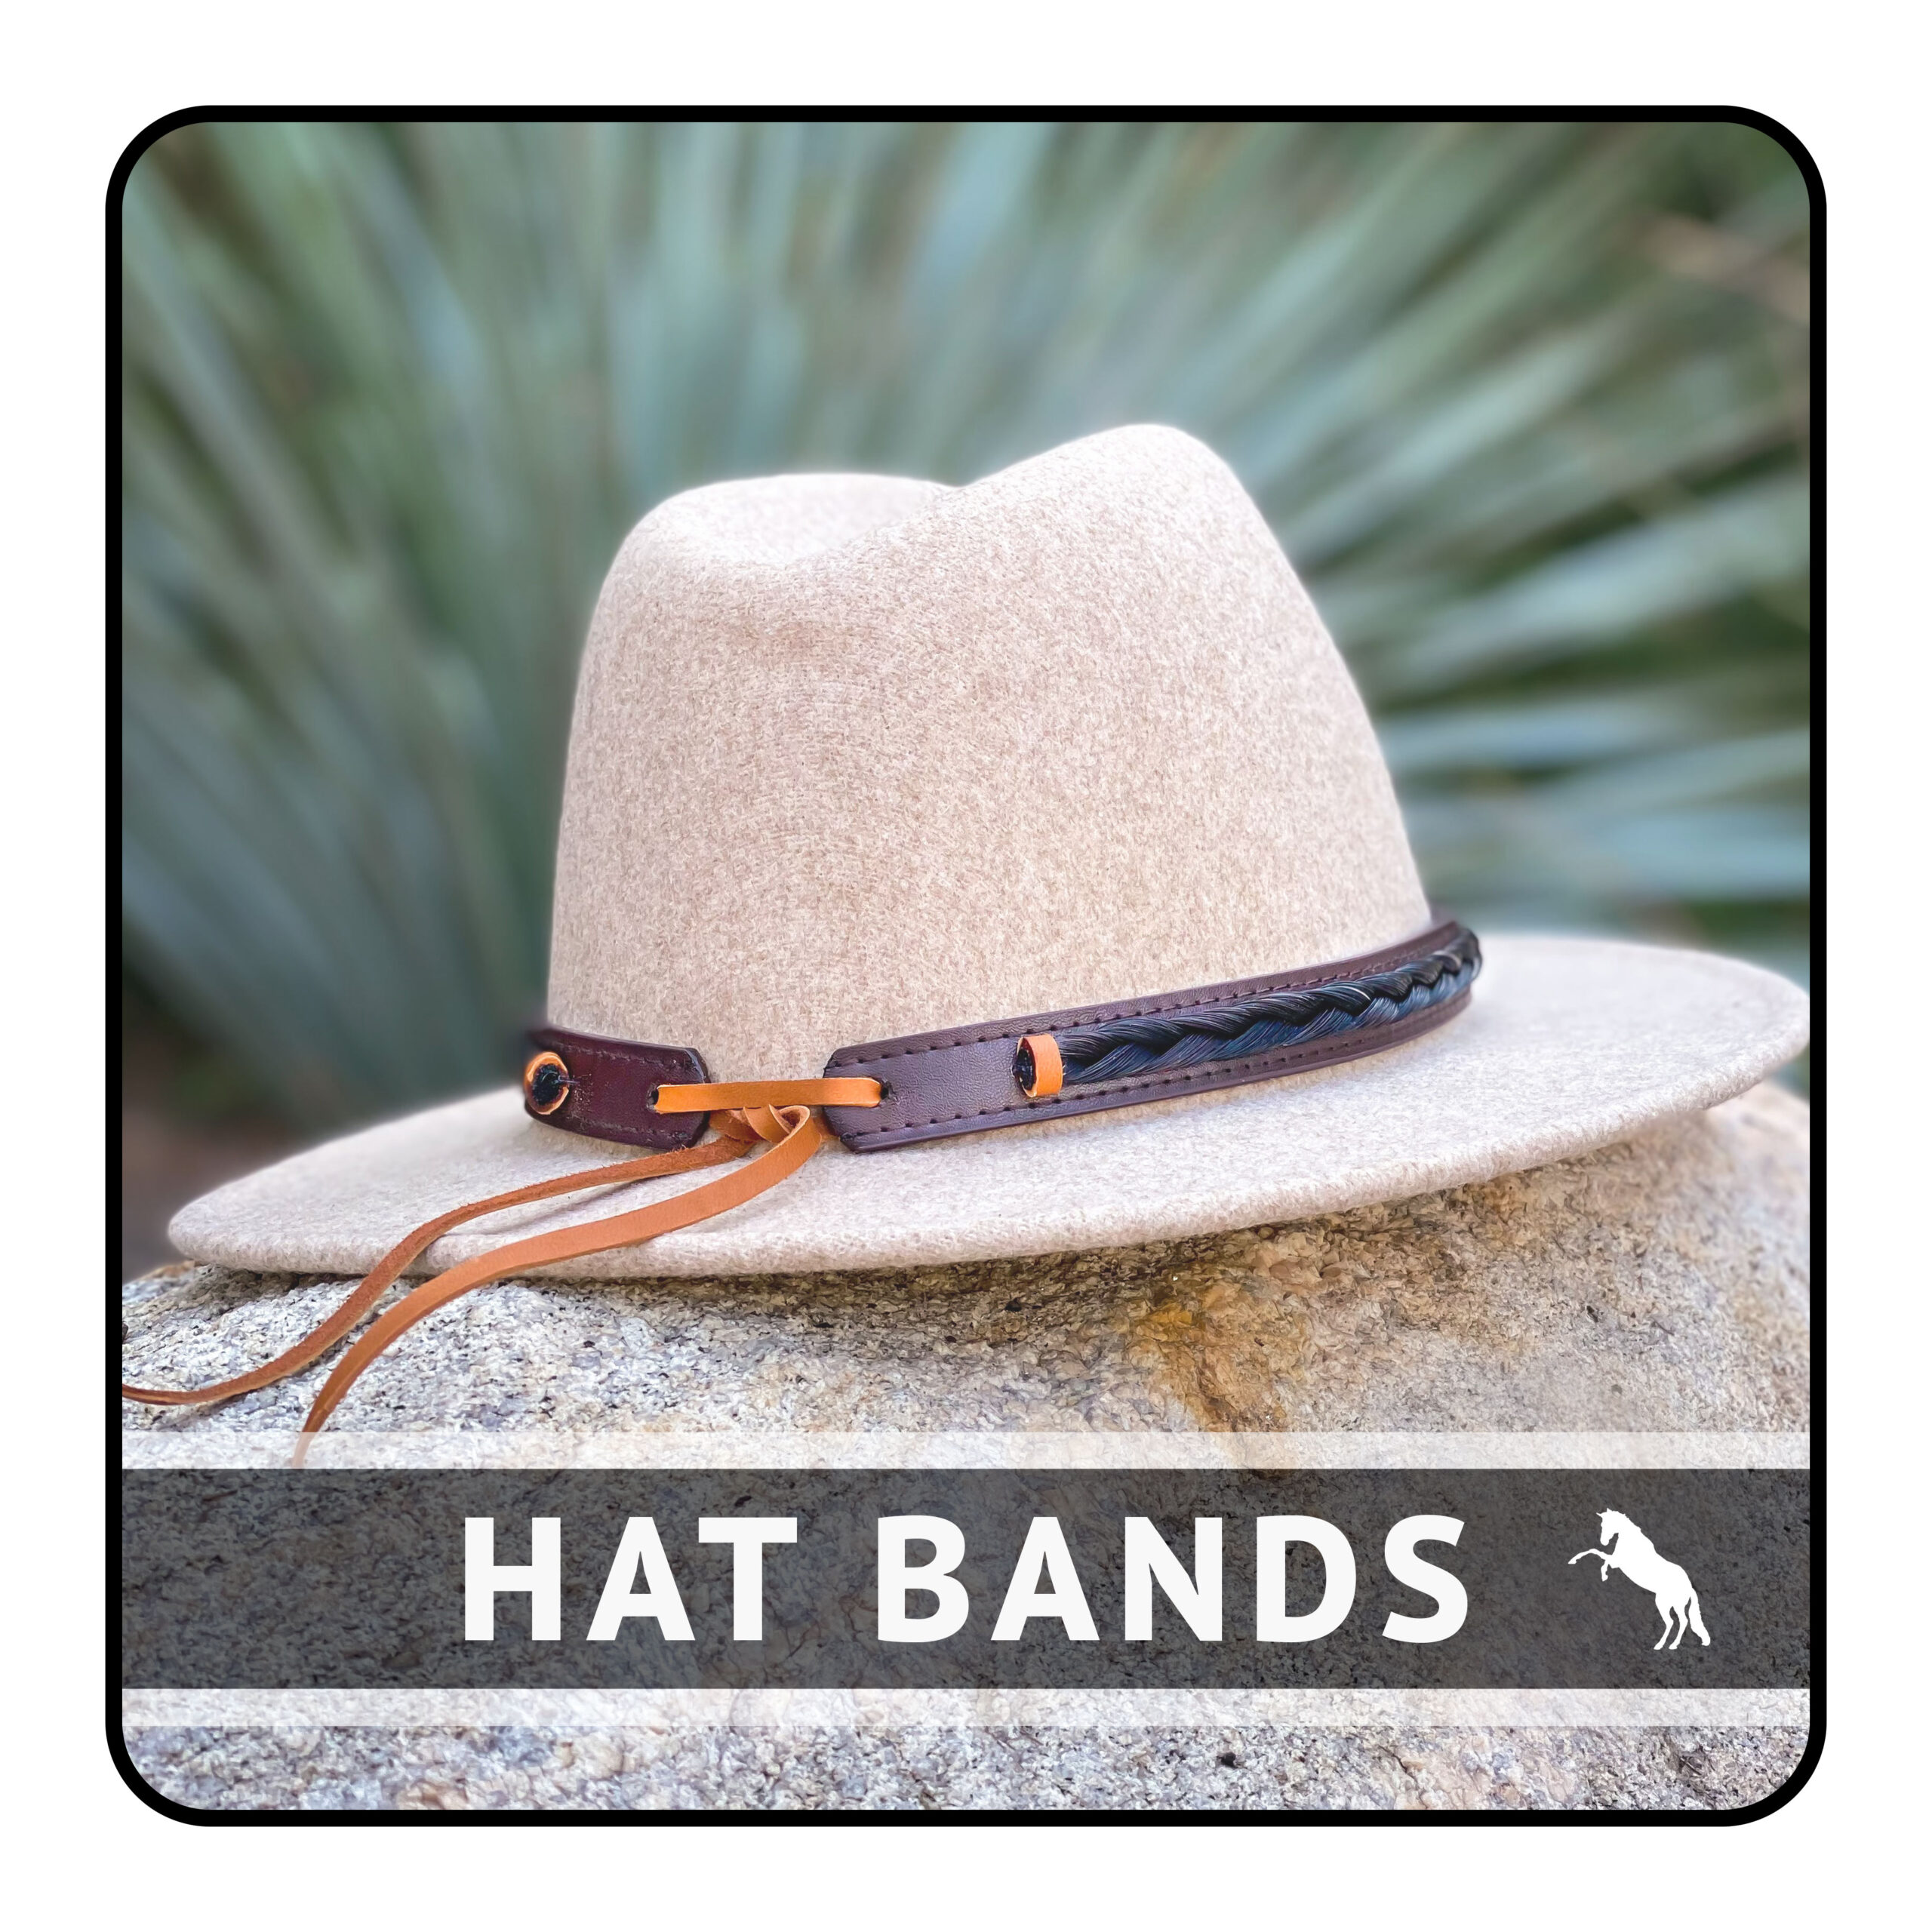 Horsehair keepsakes - hat bands